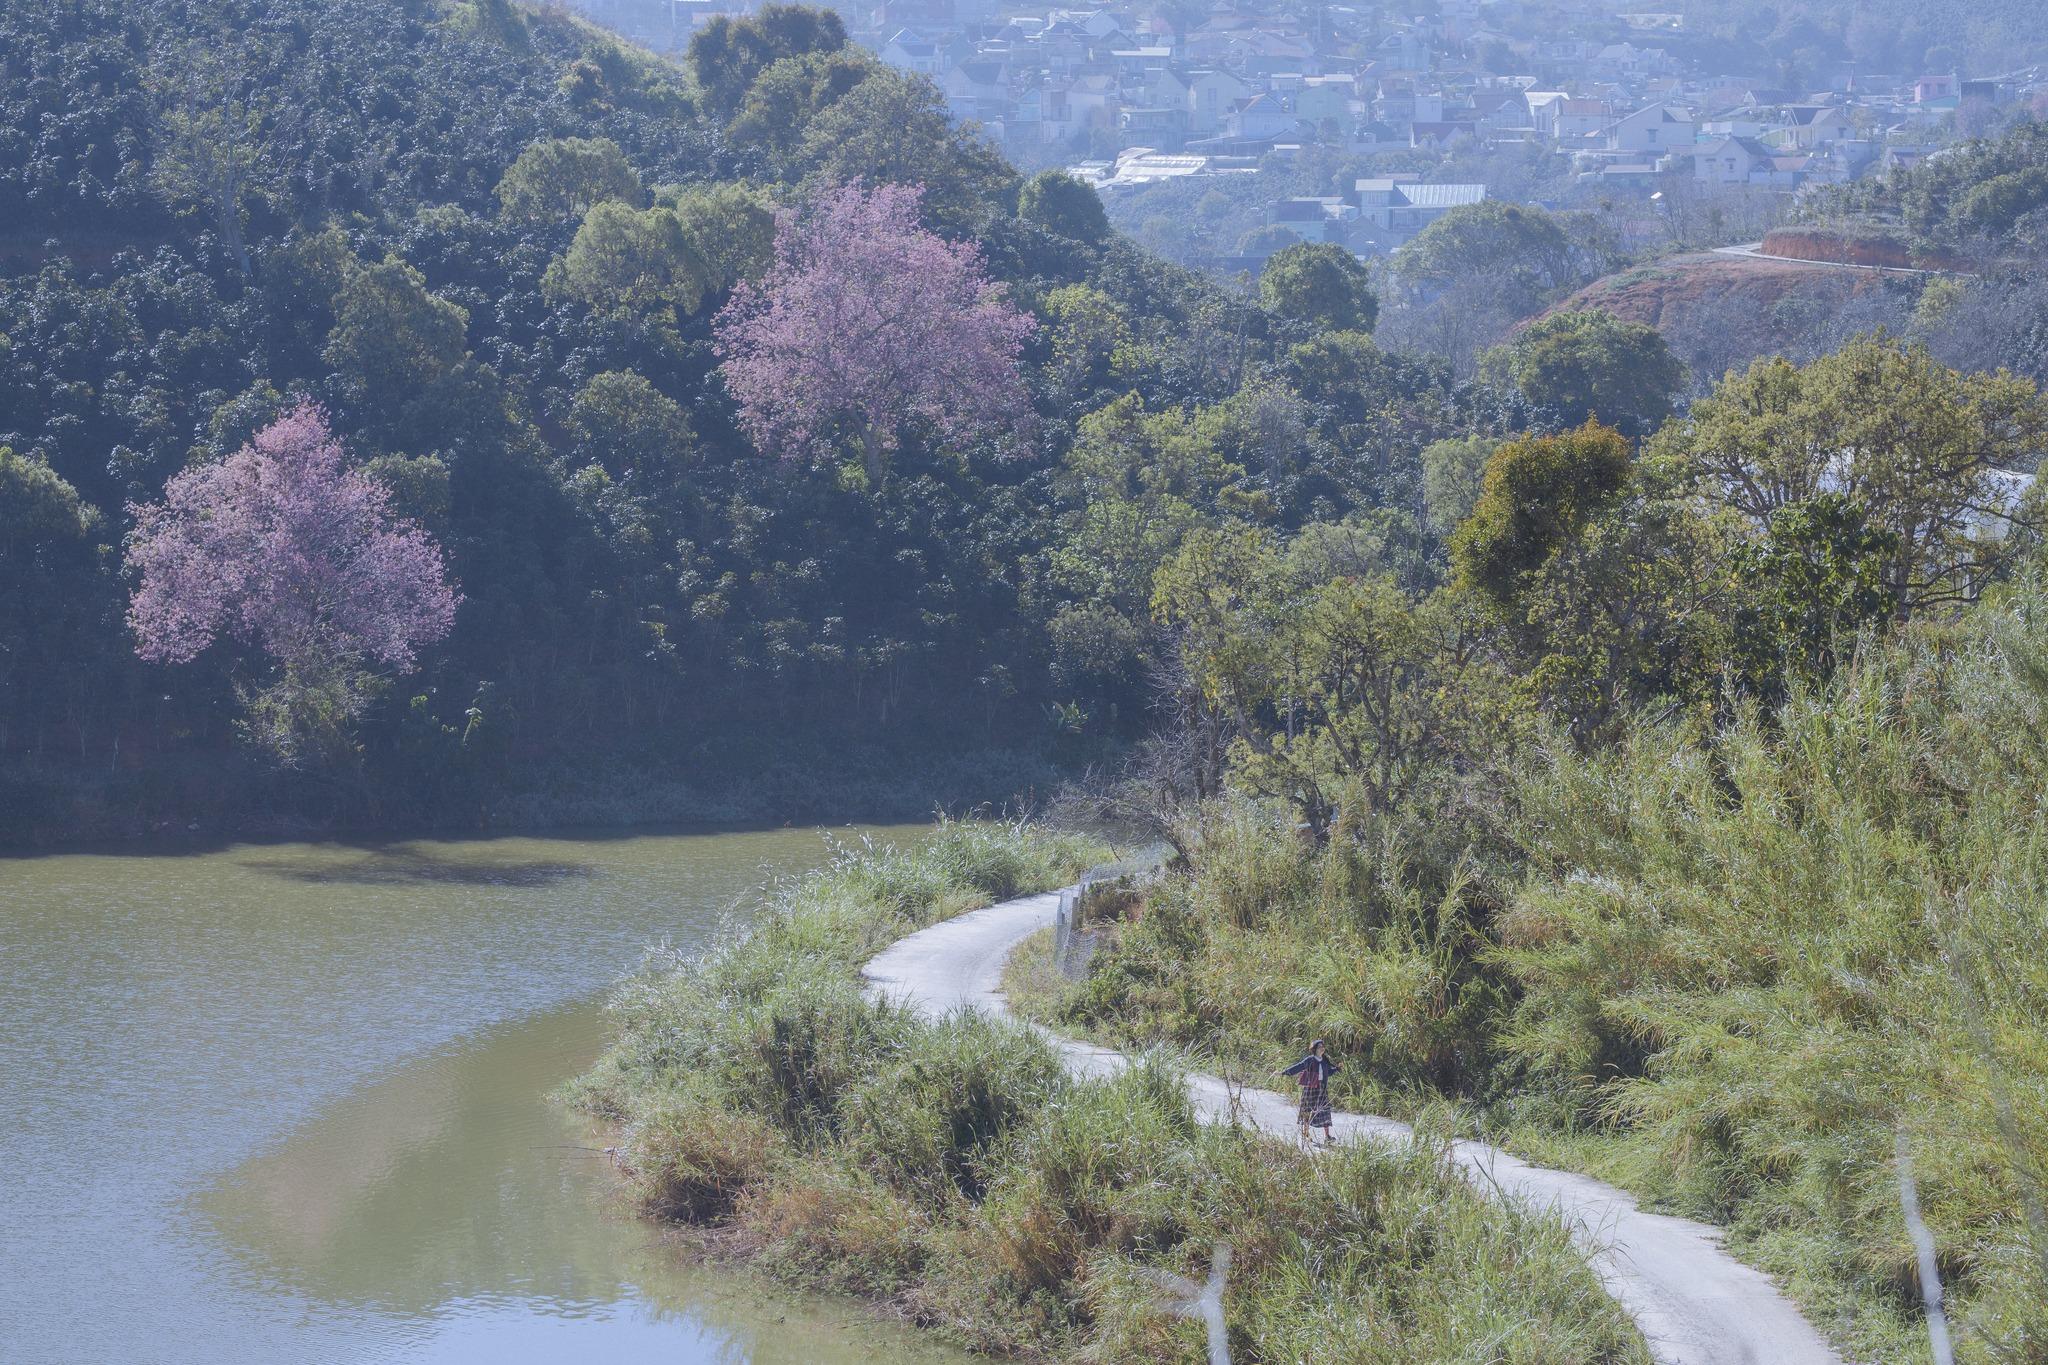 Nơi đây nổi tiếng có phong cảnh tuyệt đẹp với những ngọn đồi xanh mướt, vườn hoa rực rỡ đua sắc quanh năm. Một trong những điểm hút khách nhất tại Mộc Trà Farm chính là “con đường phong cách Hàn Quốc được làm bằng ván gỗ và uốn lượn qua khu vườn bơ.